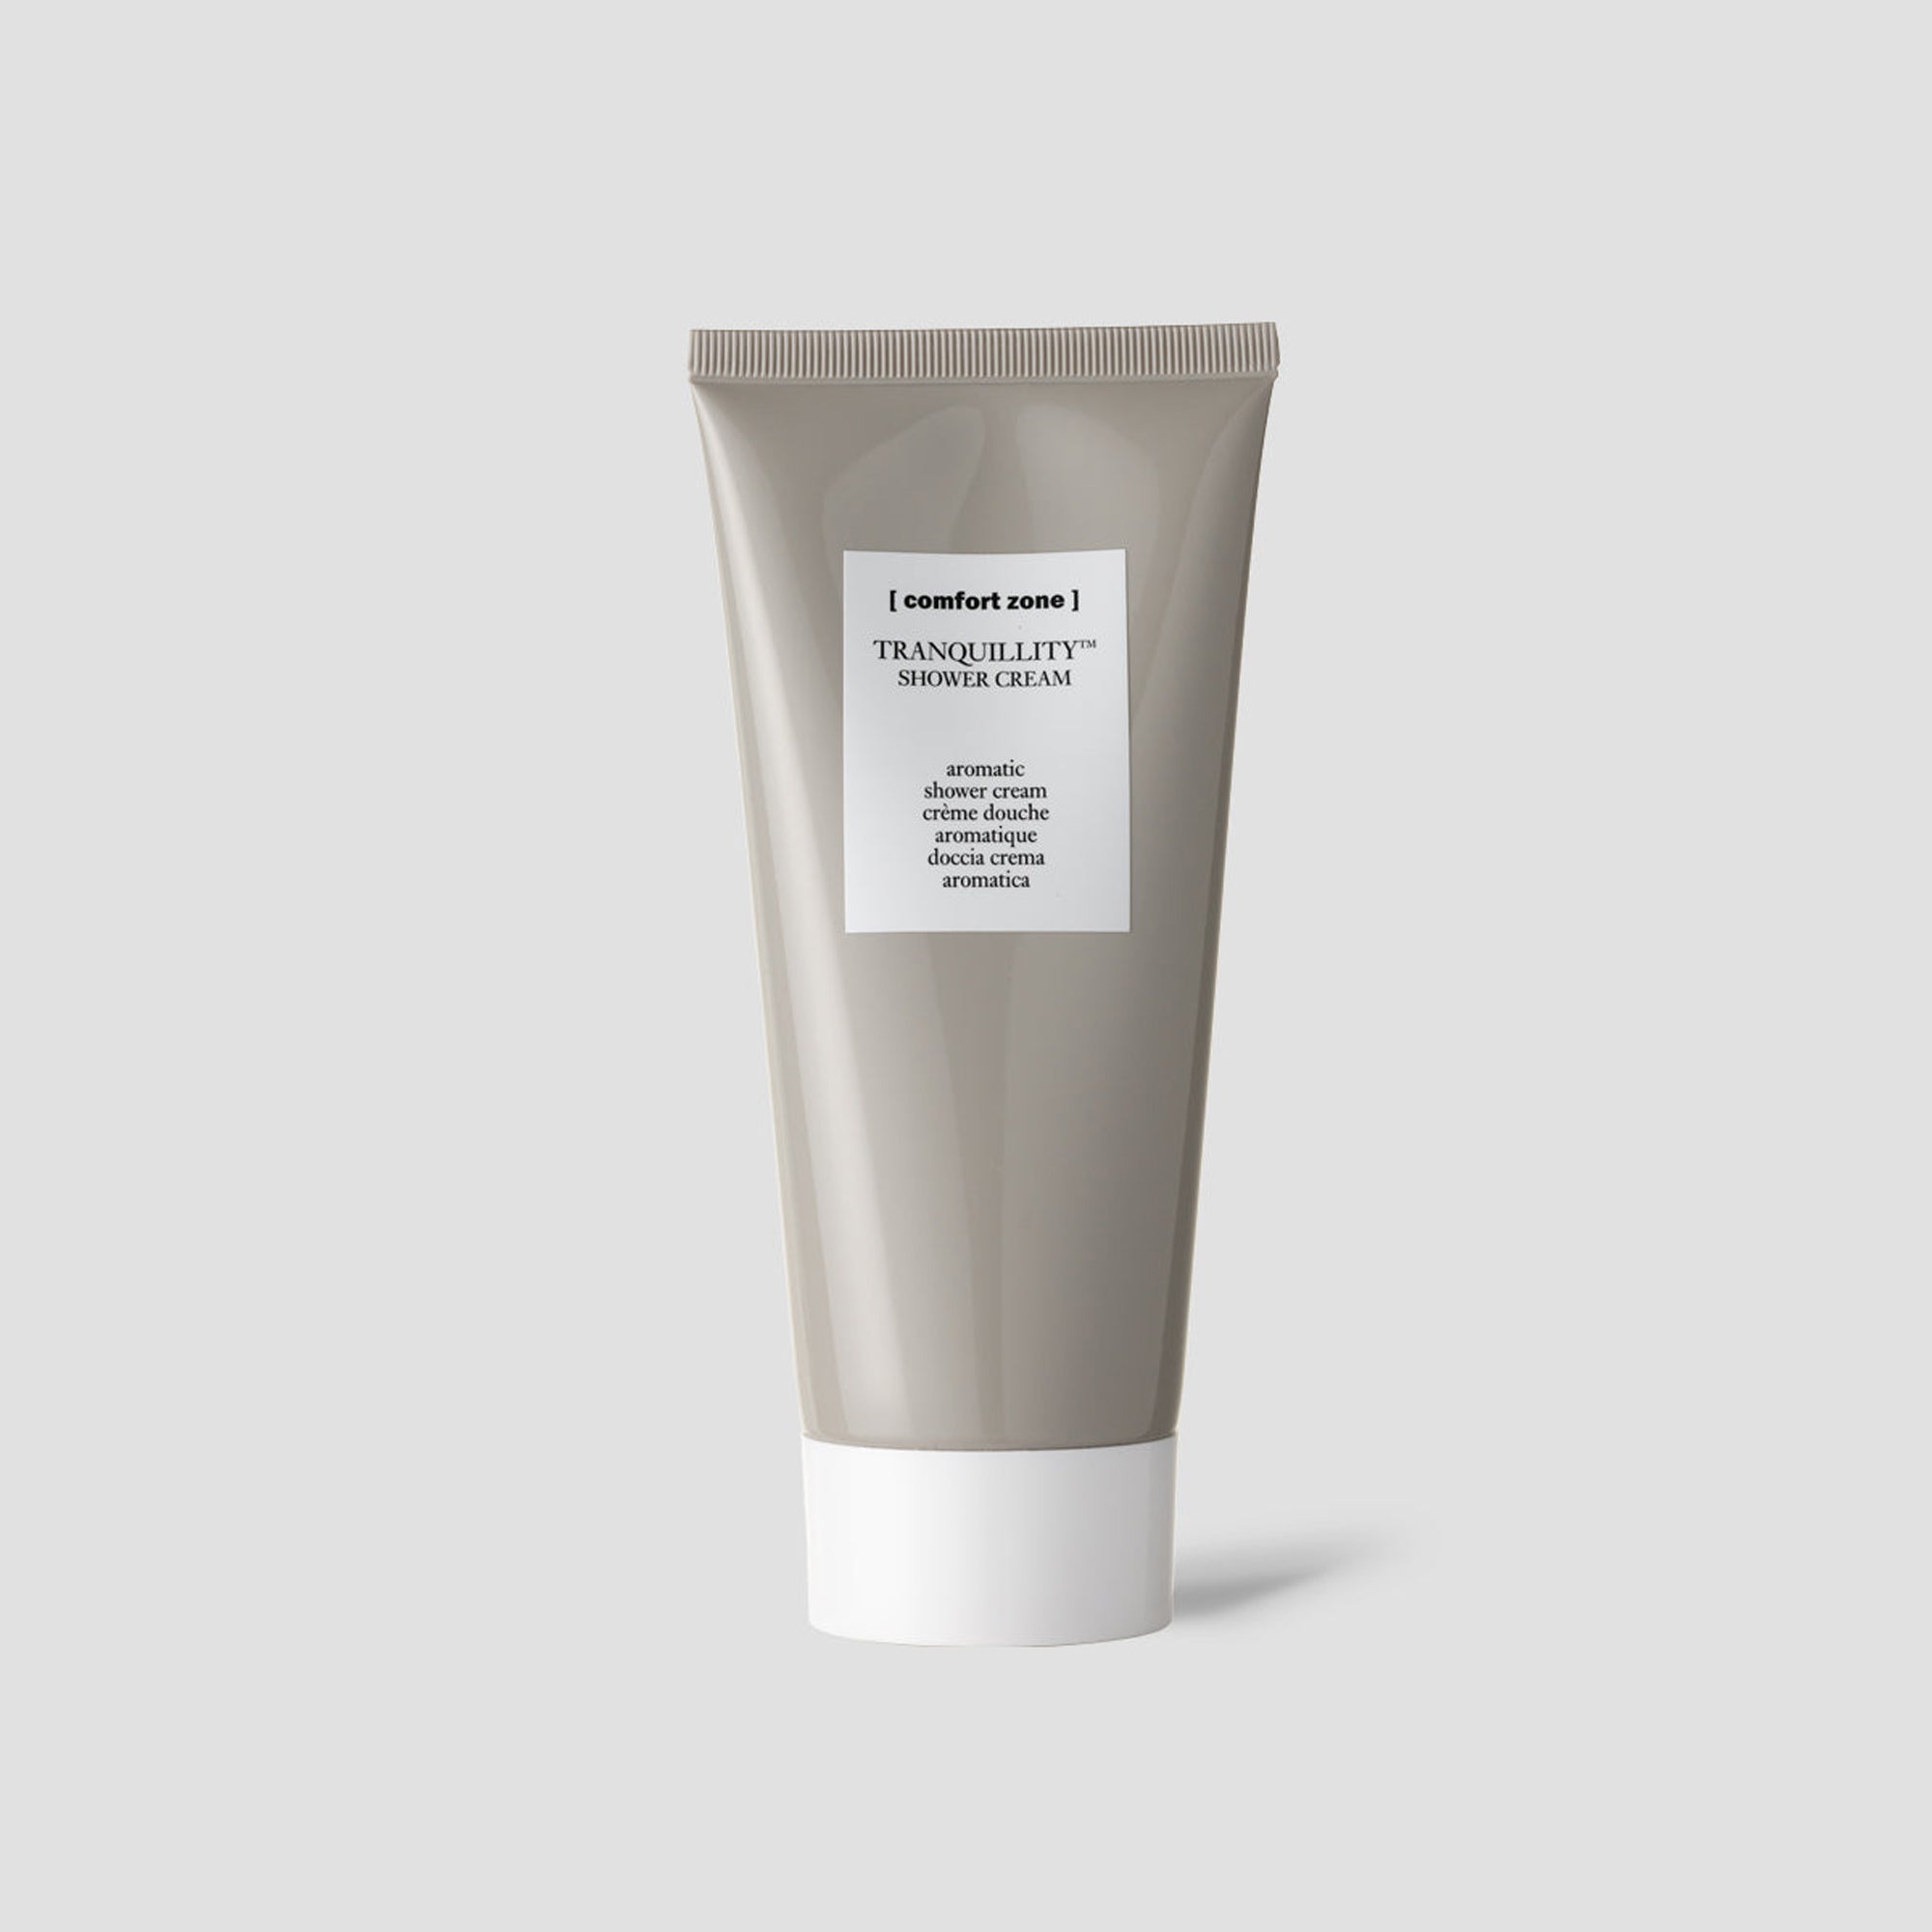 Tranquillity™ Shower Cream (Aromatic Shower Cream) - 200ml - [ comfort zone ]